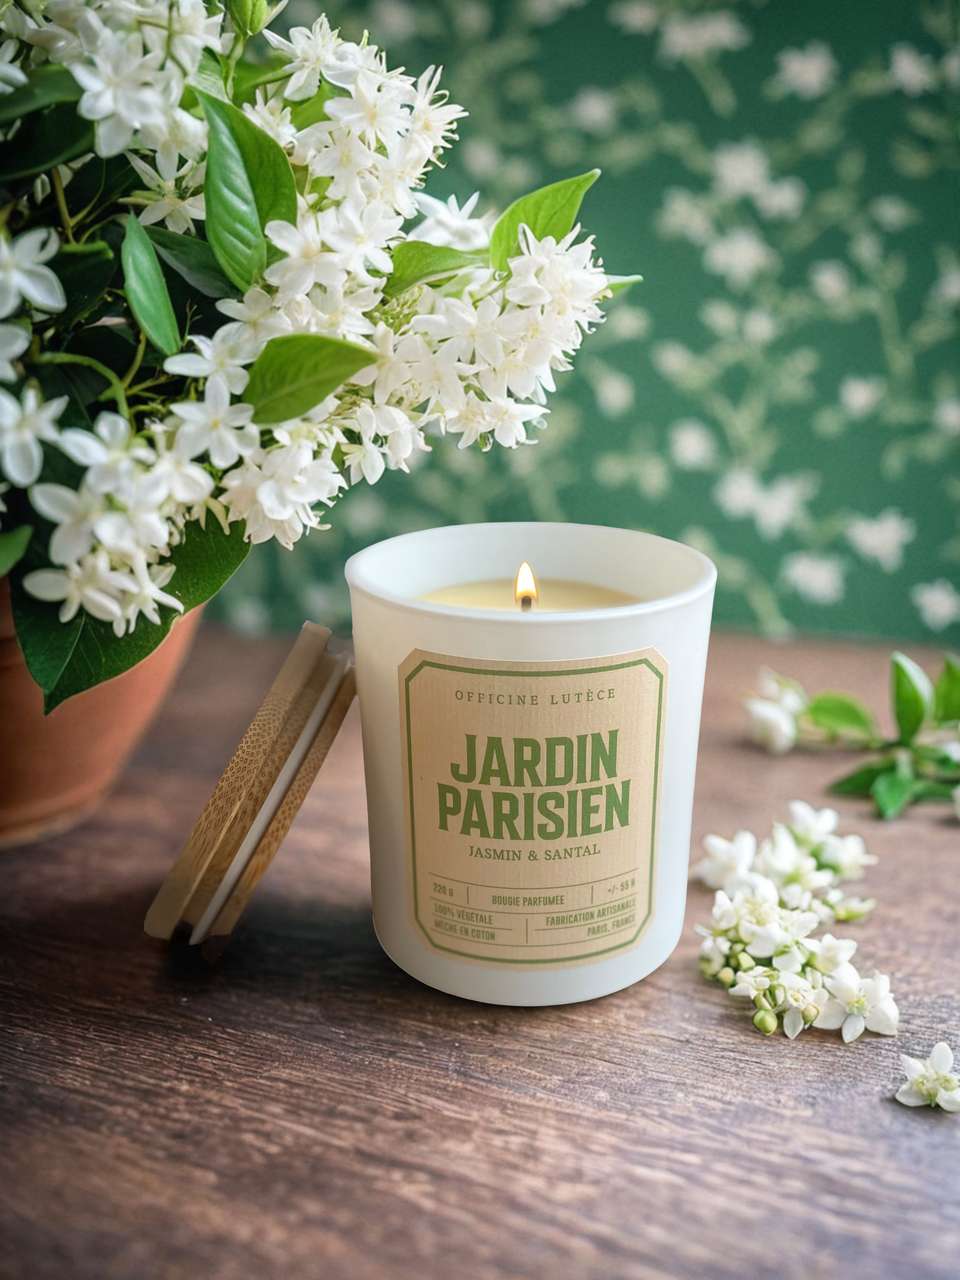 Parisian Garden Scented Candle - Jasmine & Sandalwood 圖片